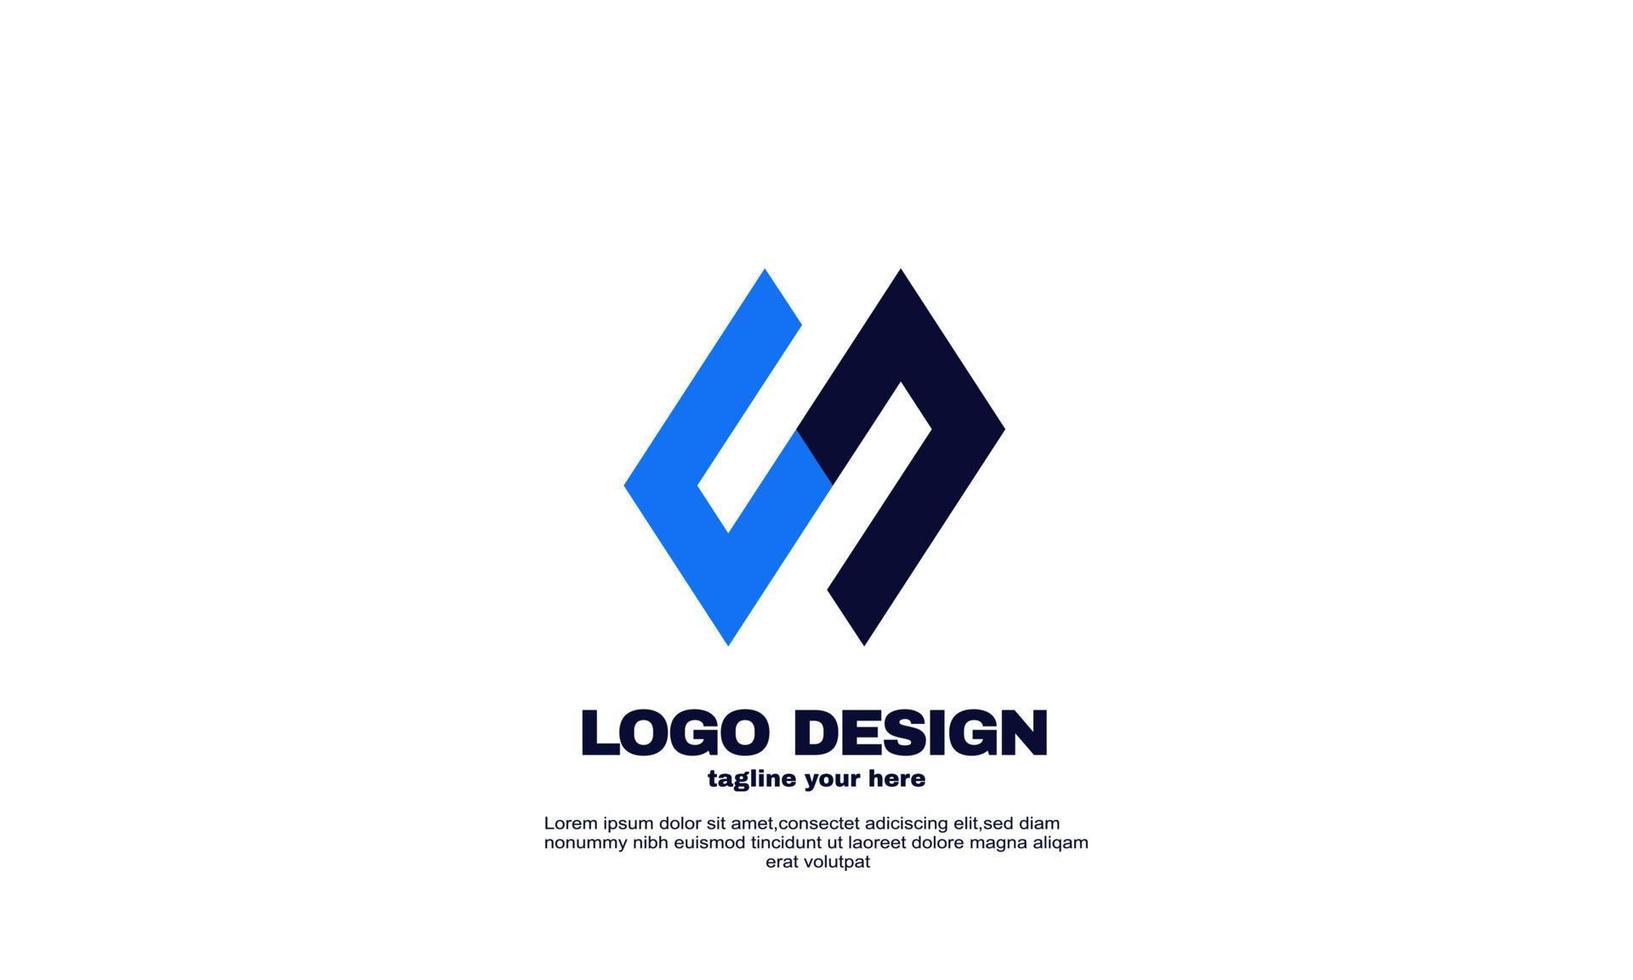 incrível cor azul marinho melhor inspiração design moderno de logotipo de negócios da empresa vetor